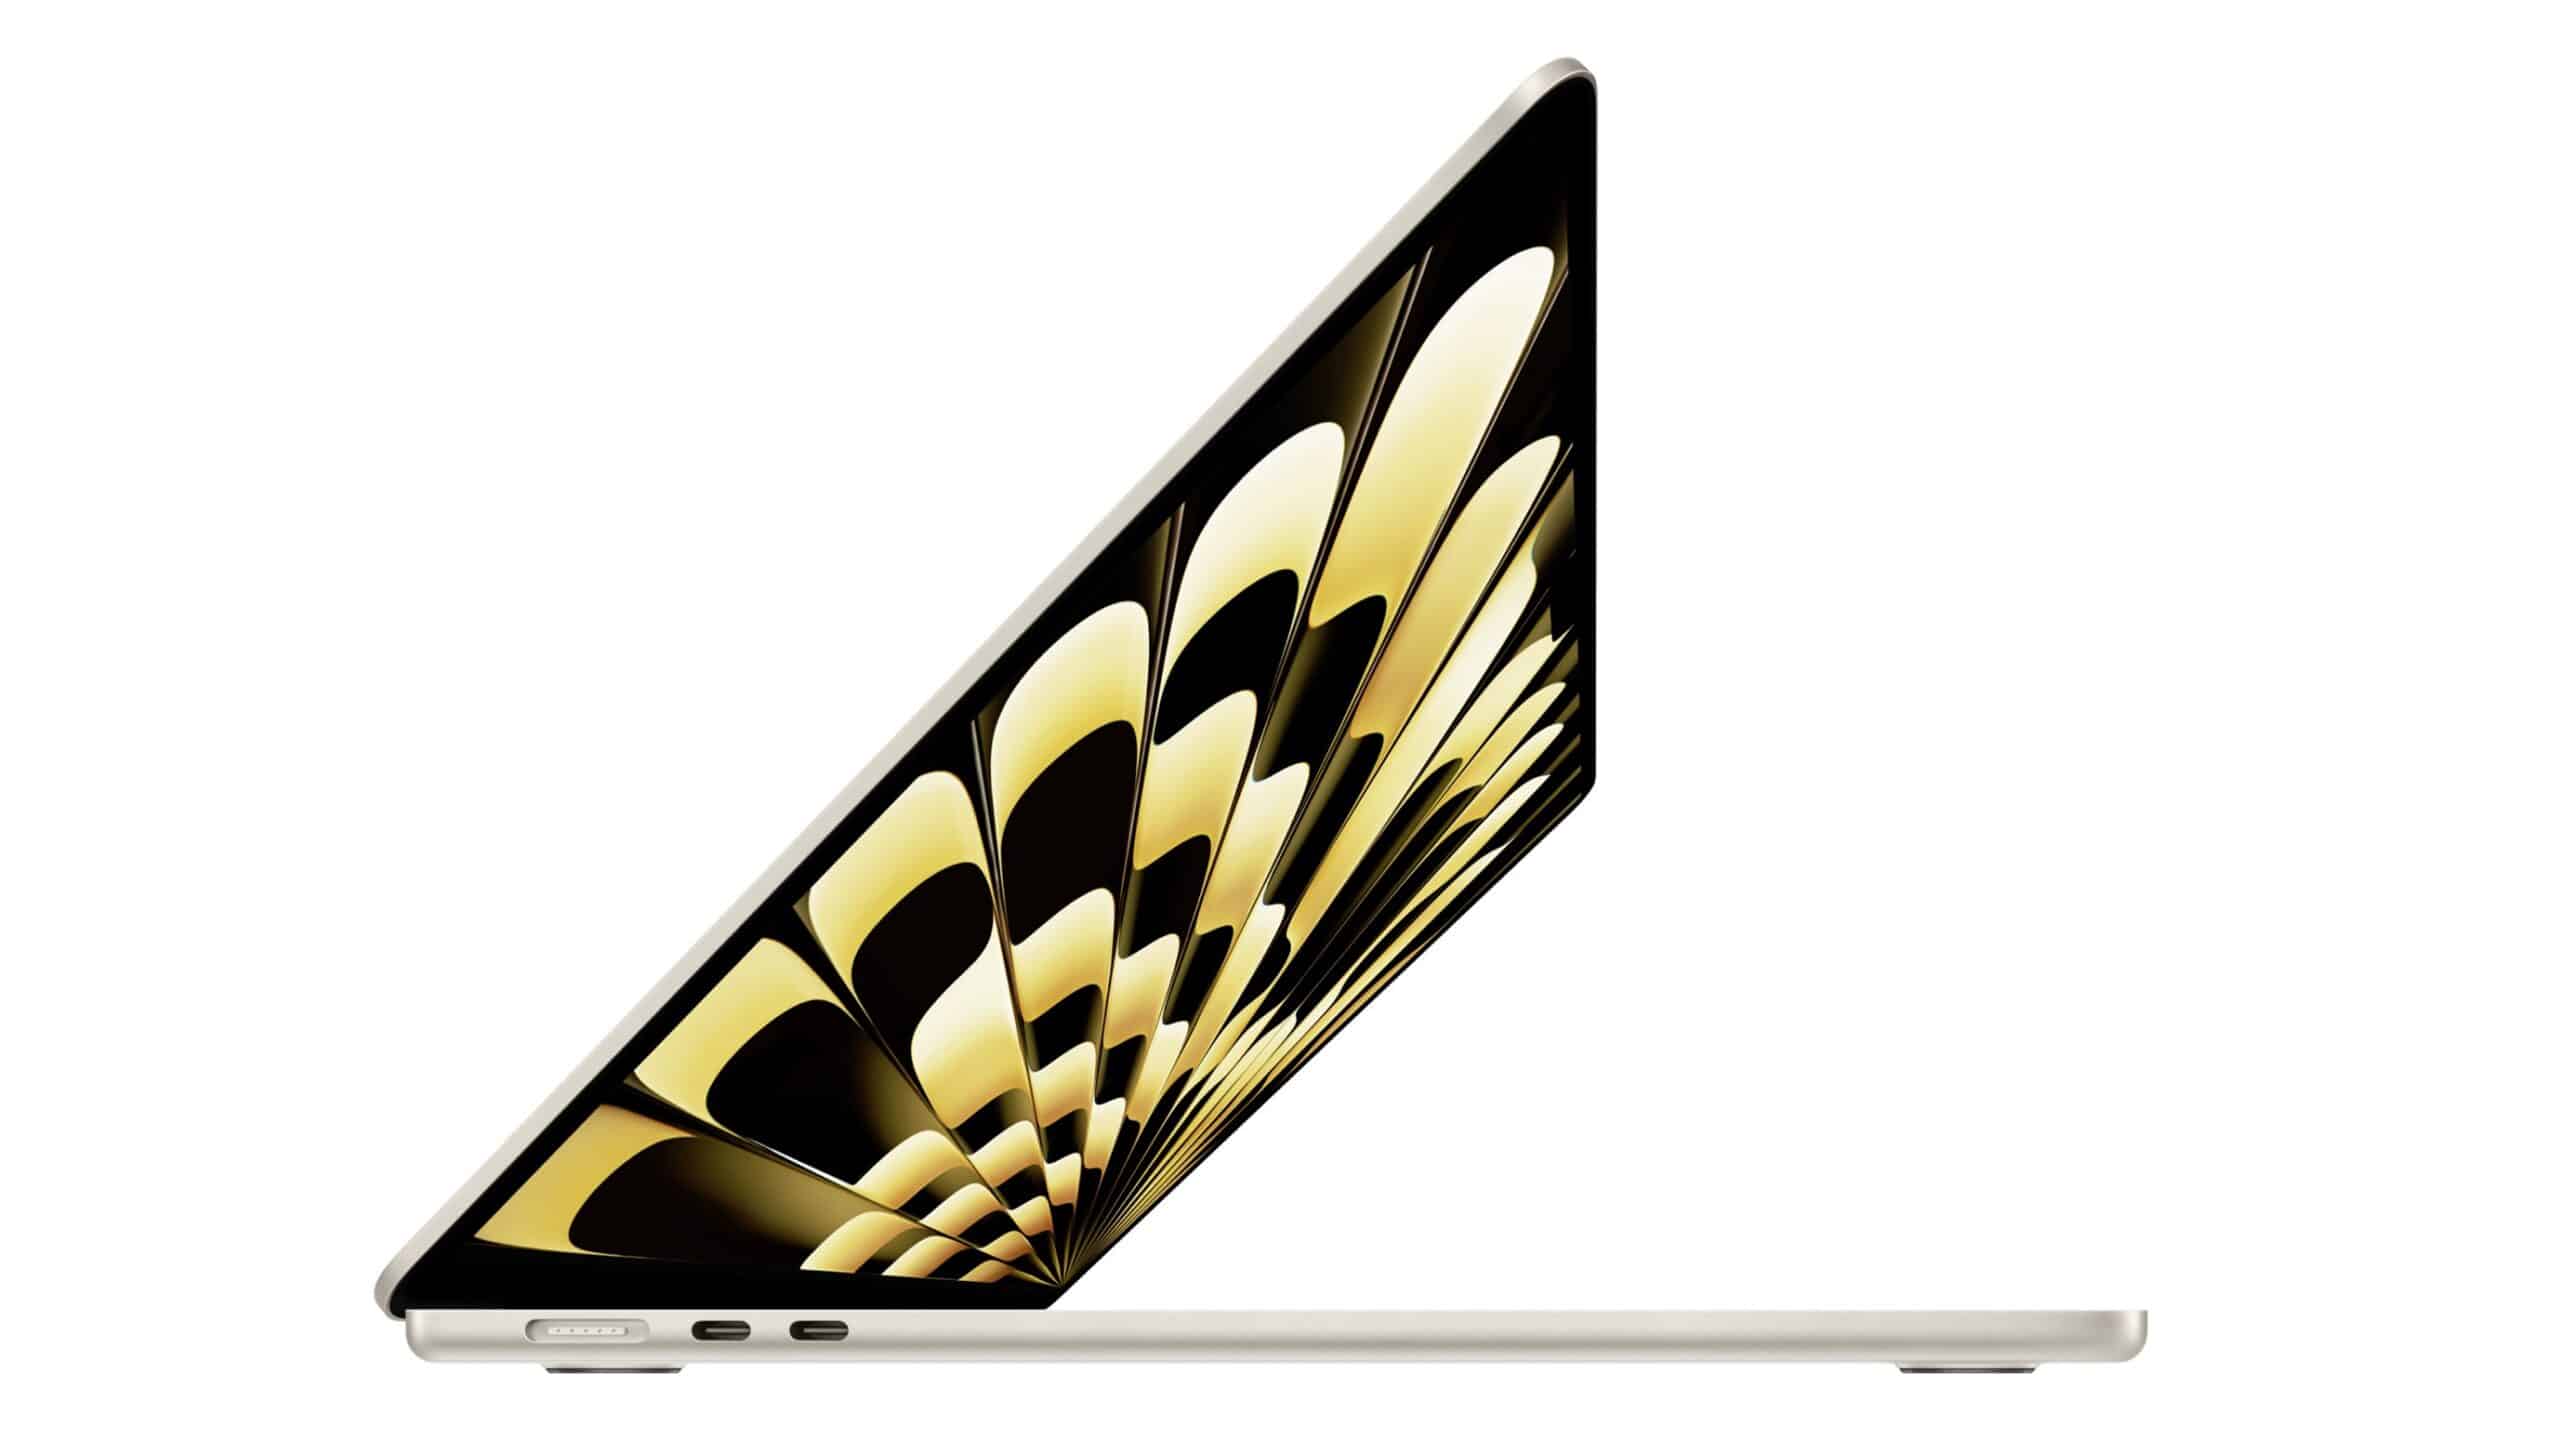 買 MacBook Air 15 吋要留意　256GB SSD 證實讀寫速度較慢